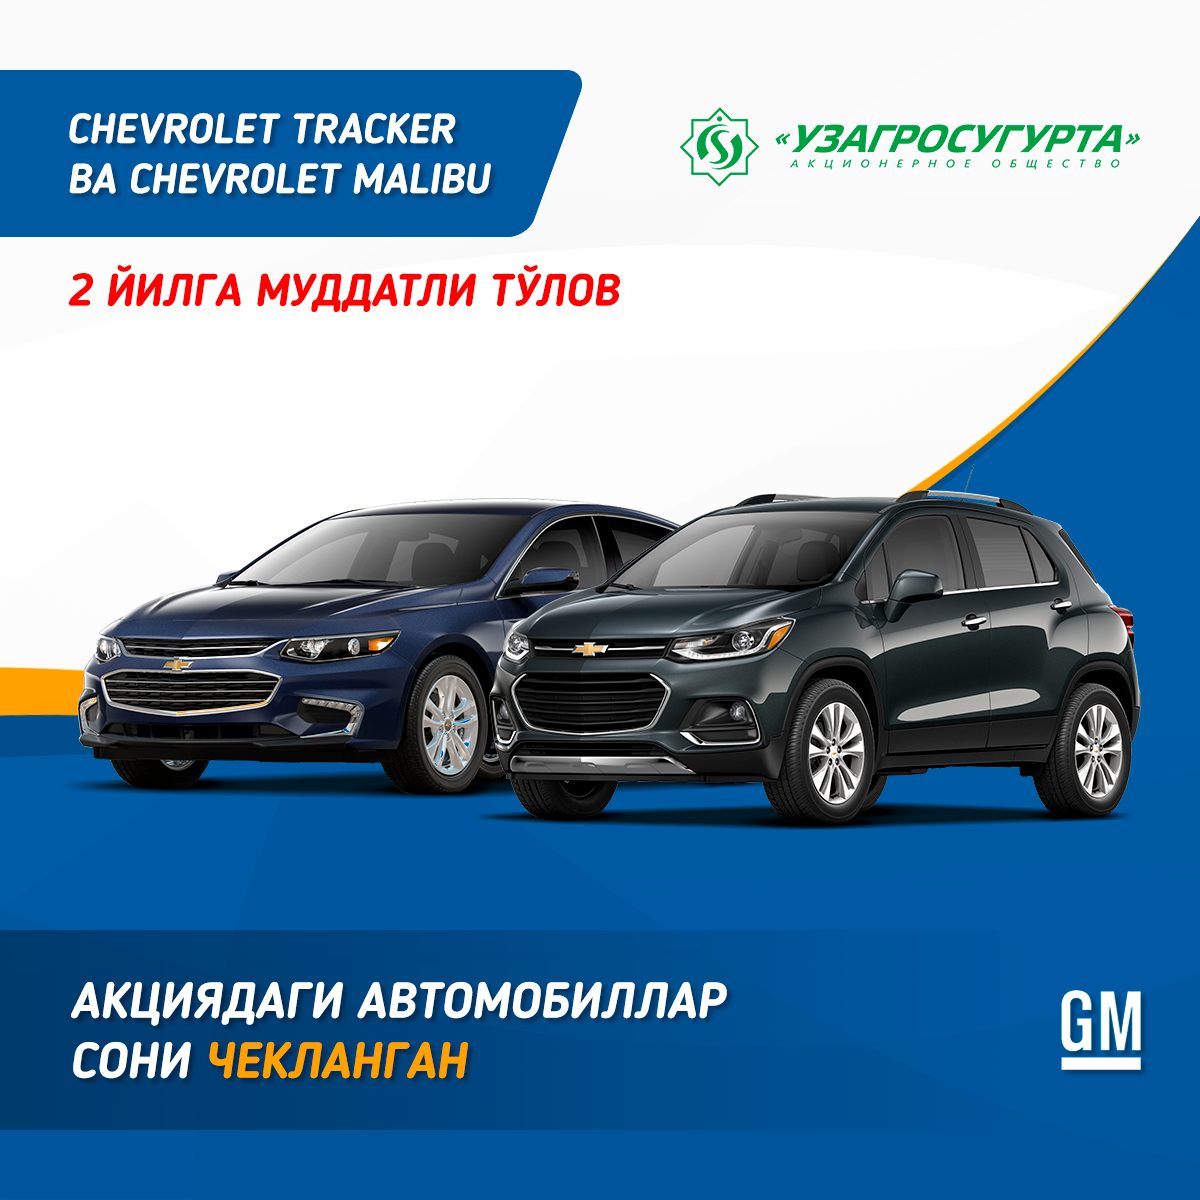 Безпроцентная рассрочка от GM Uzbekistan для автомобилей Tracker и Malibu продлена на 2 года